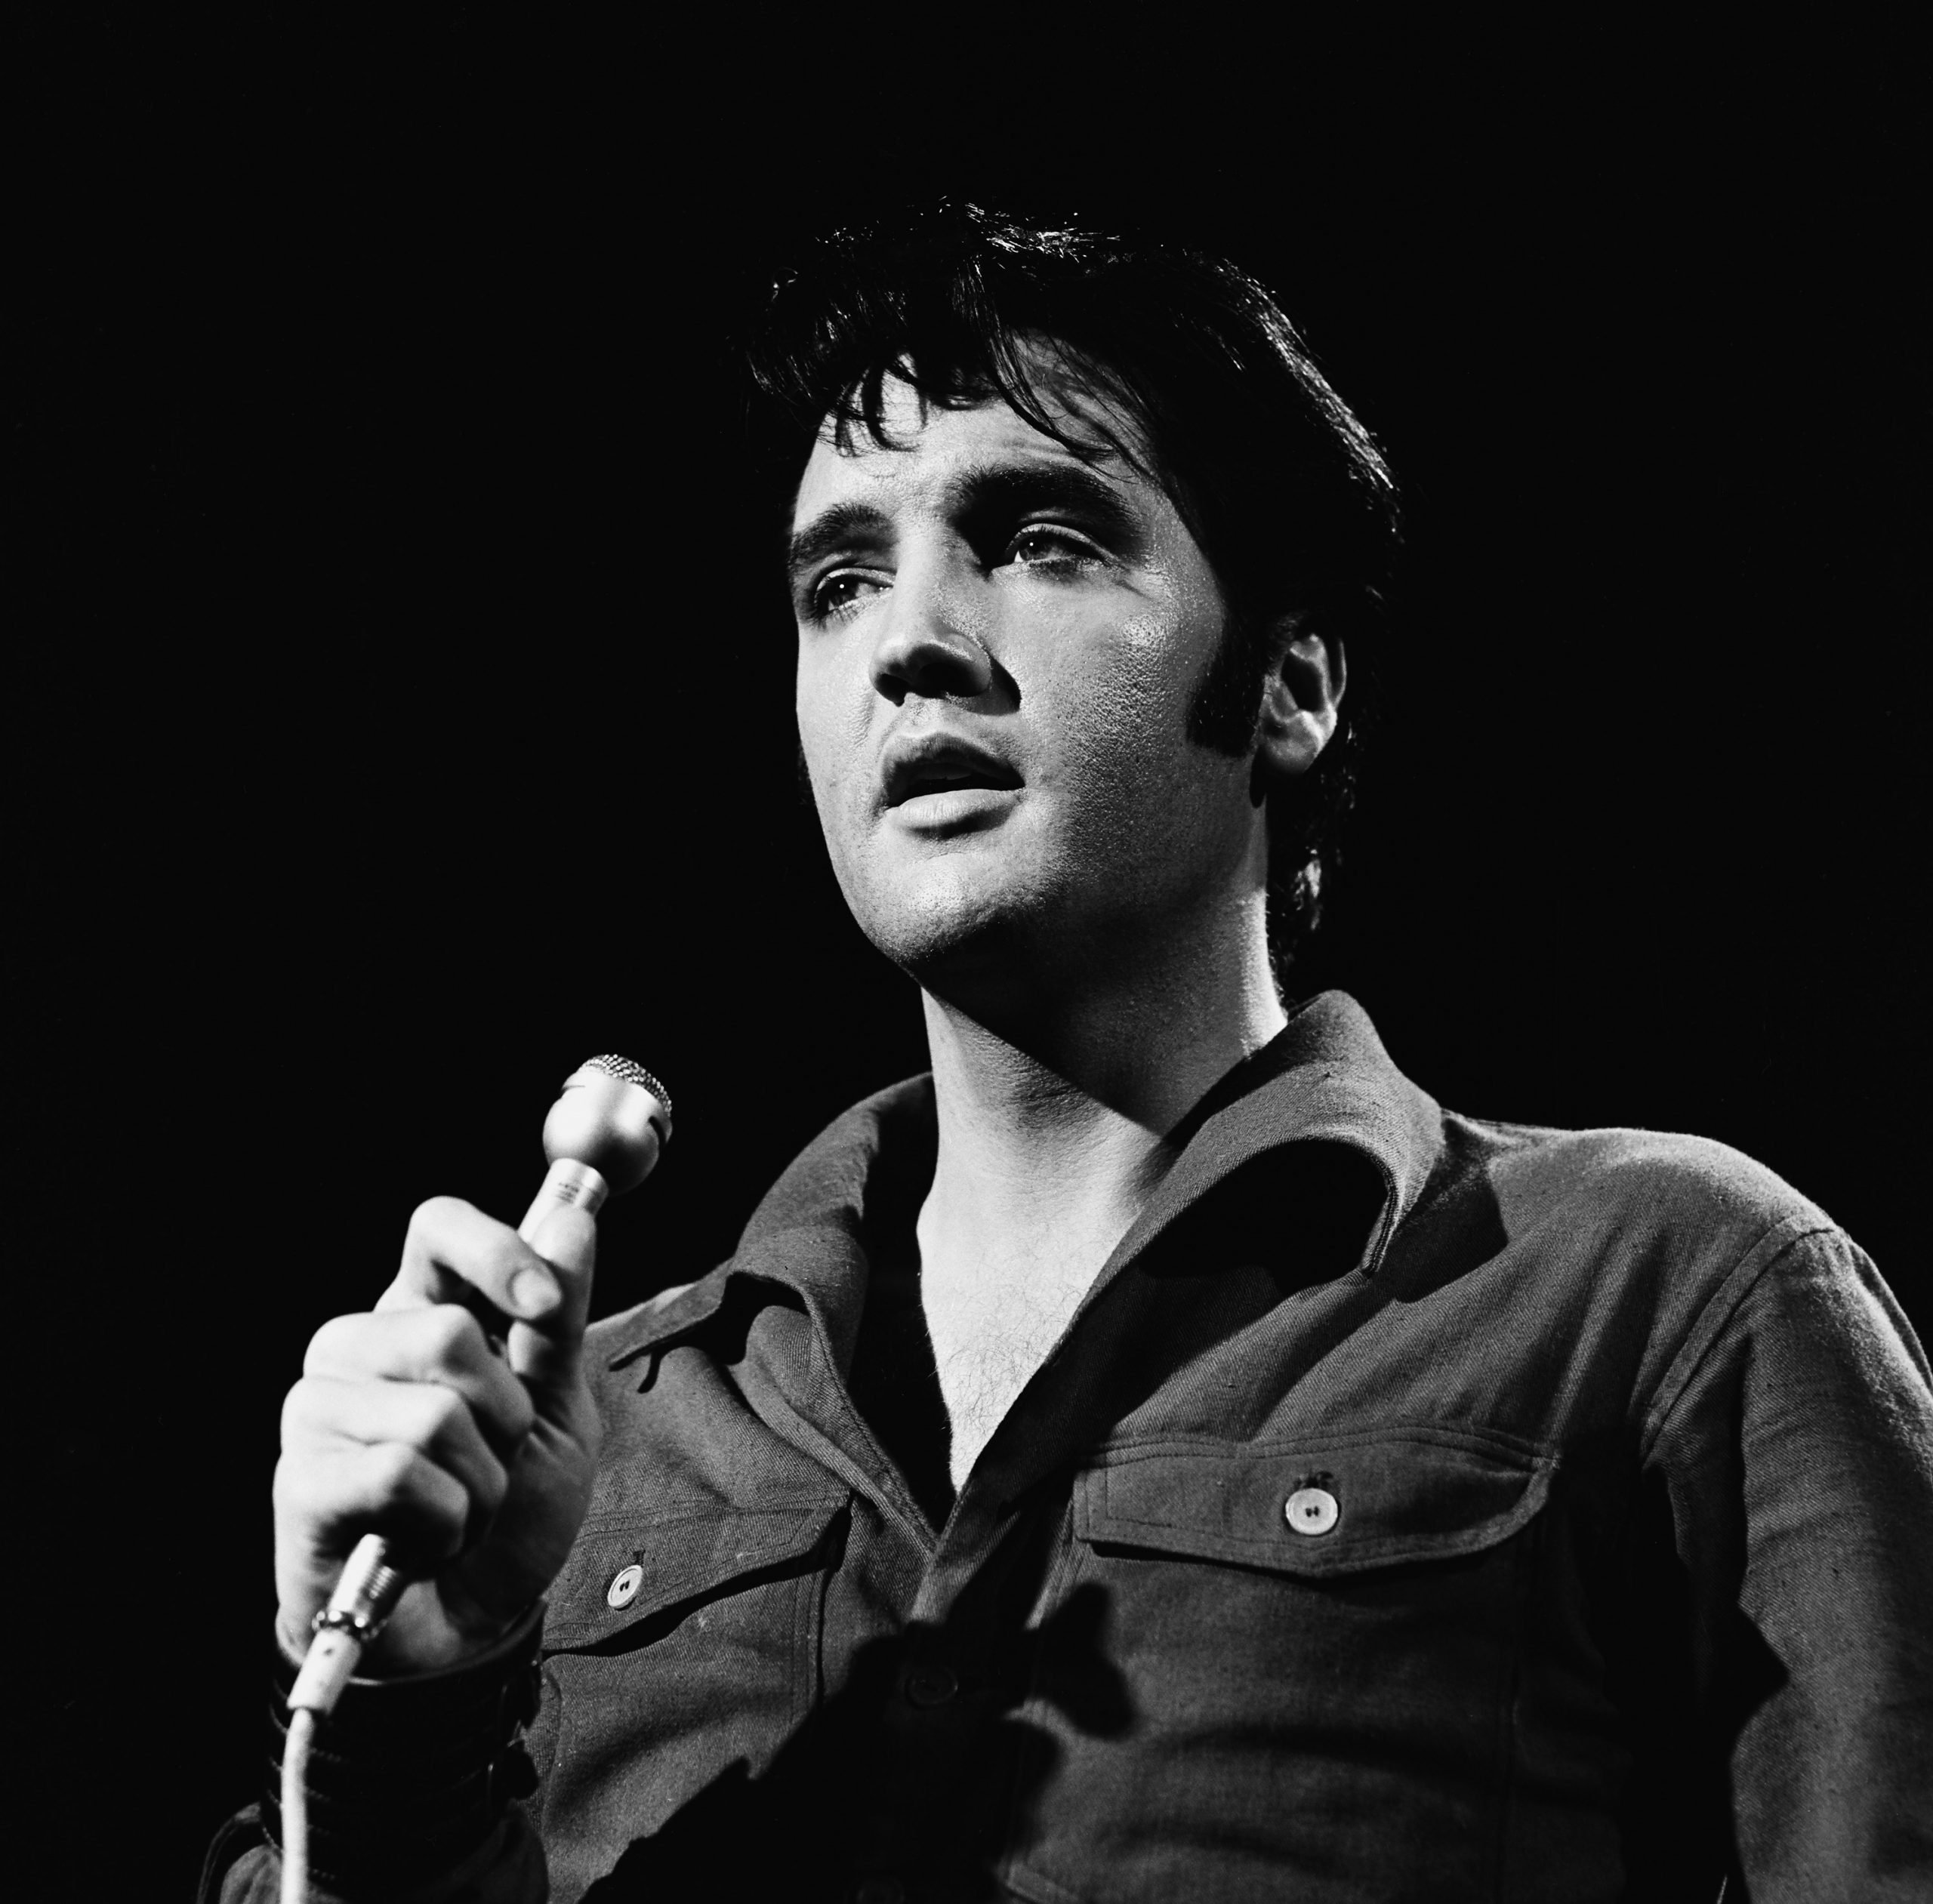 "Viva Las Vegas" singer Elvis Presley holding a microphone